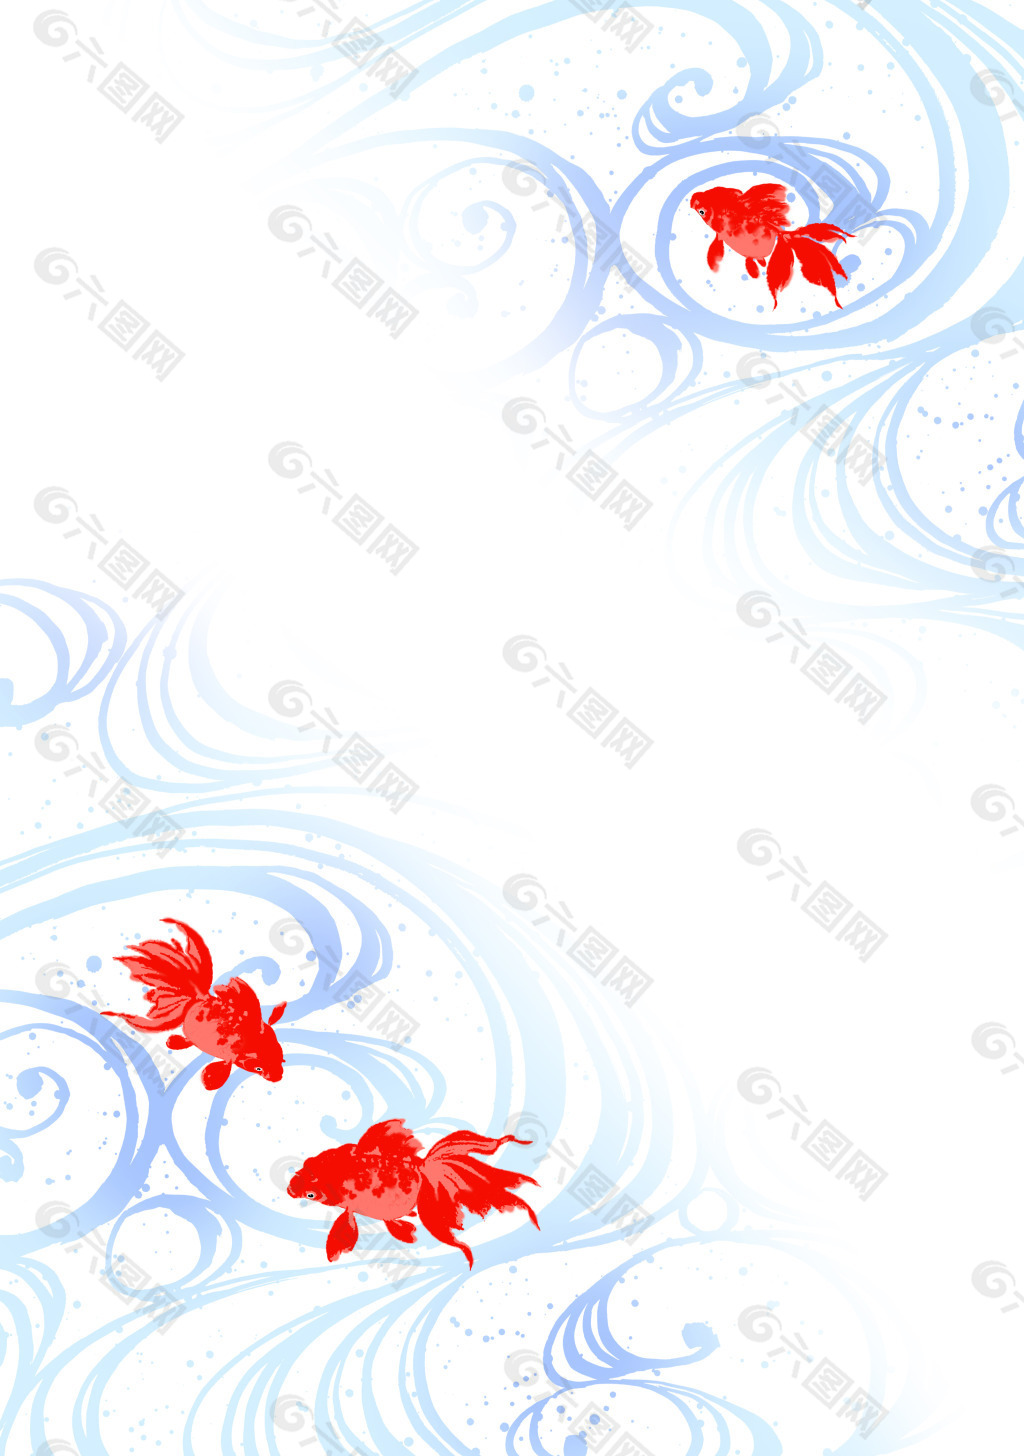 其他-金鱼红色金鱼动物金鱼-好图网